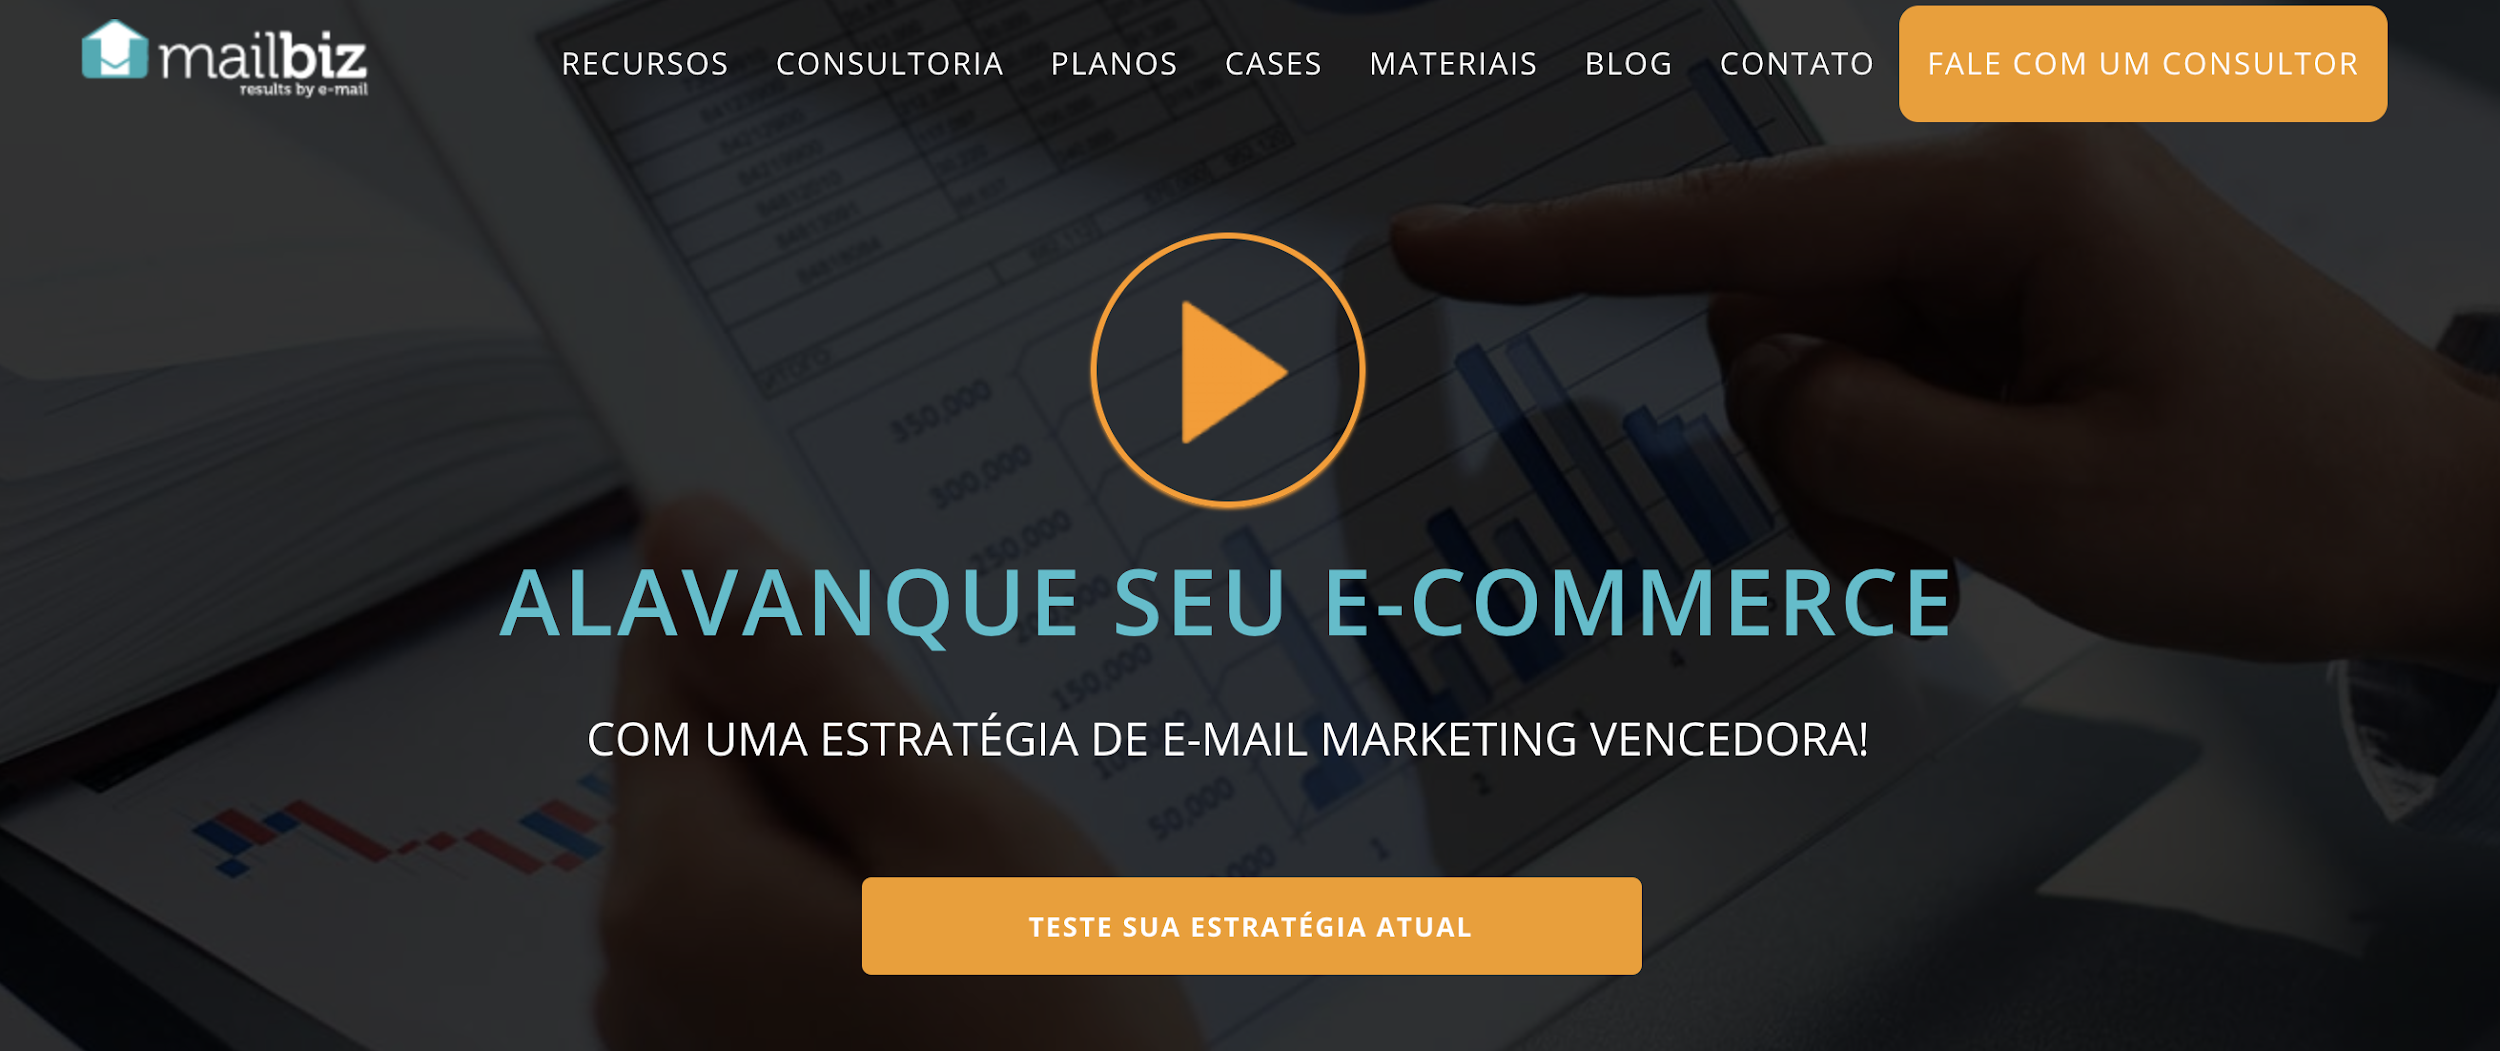 Mailbiz como exemplo de ferramenta de email marketing